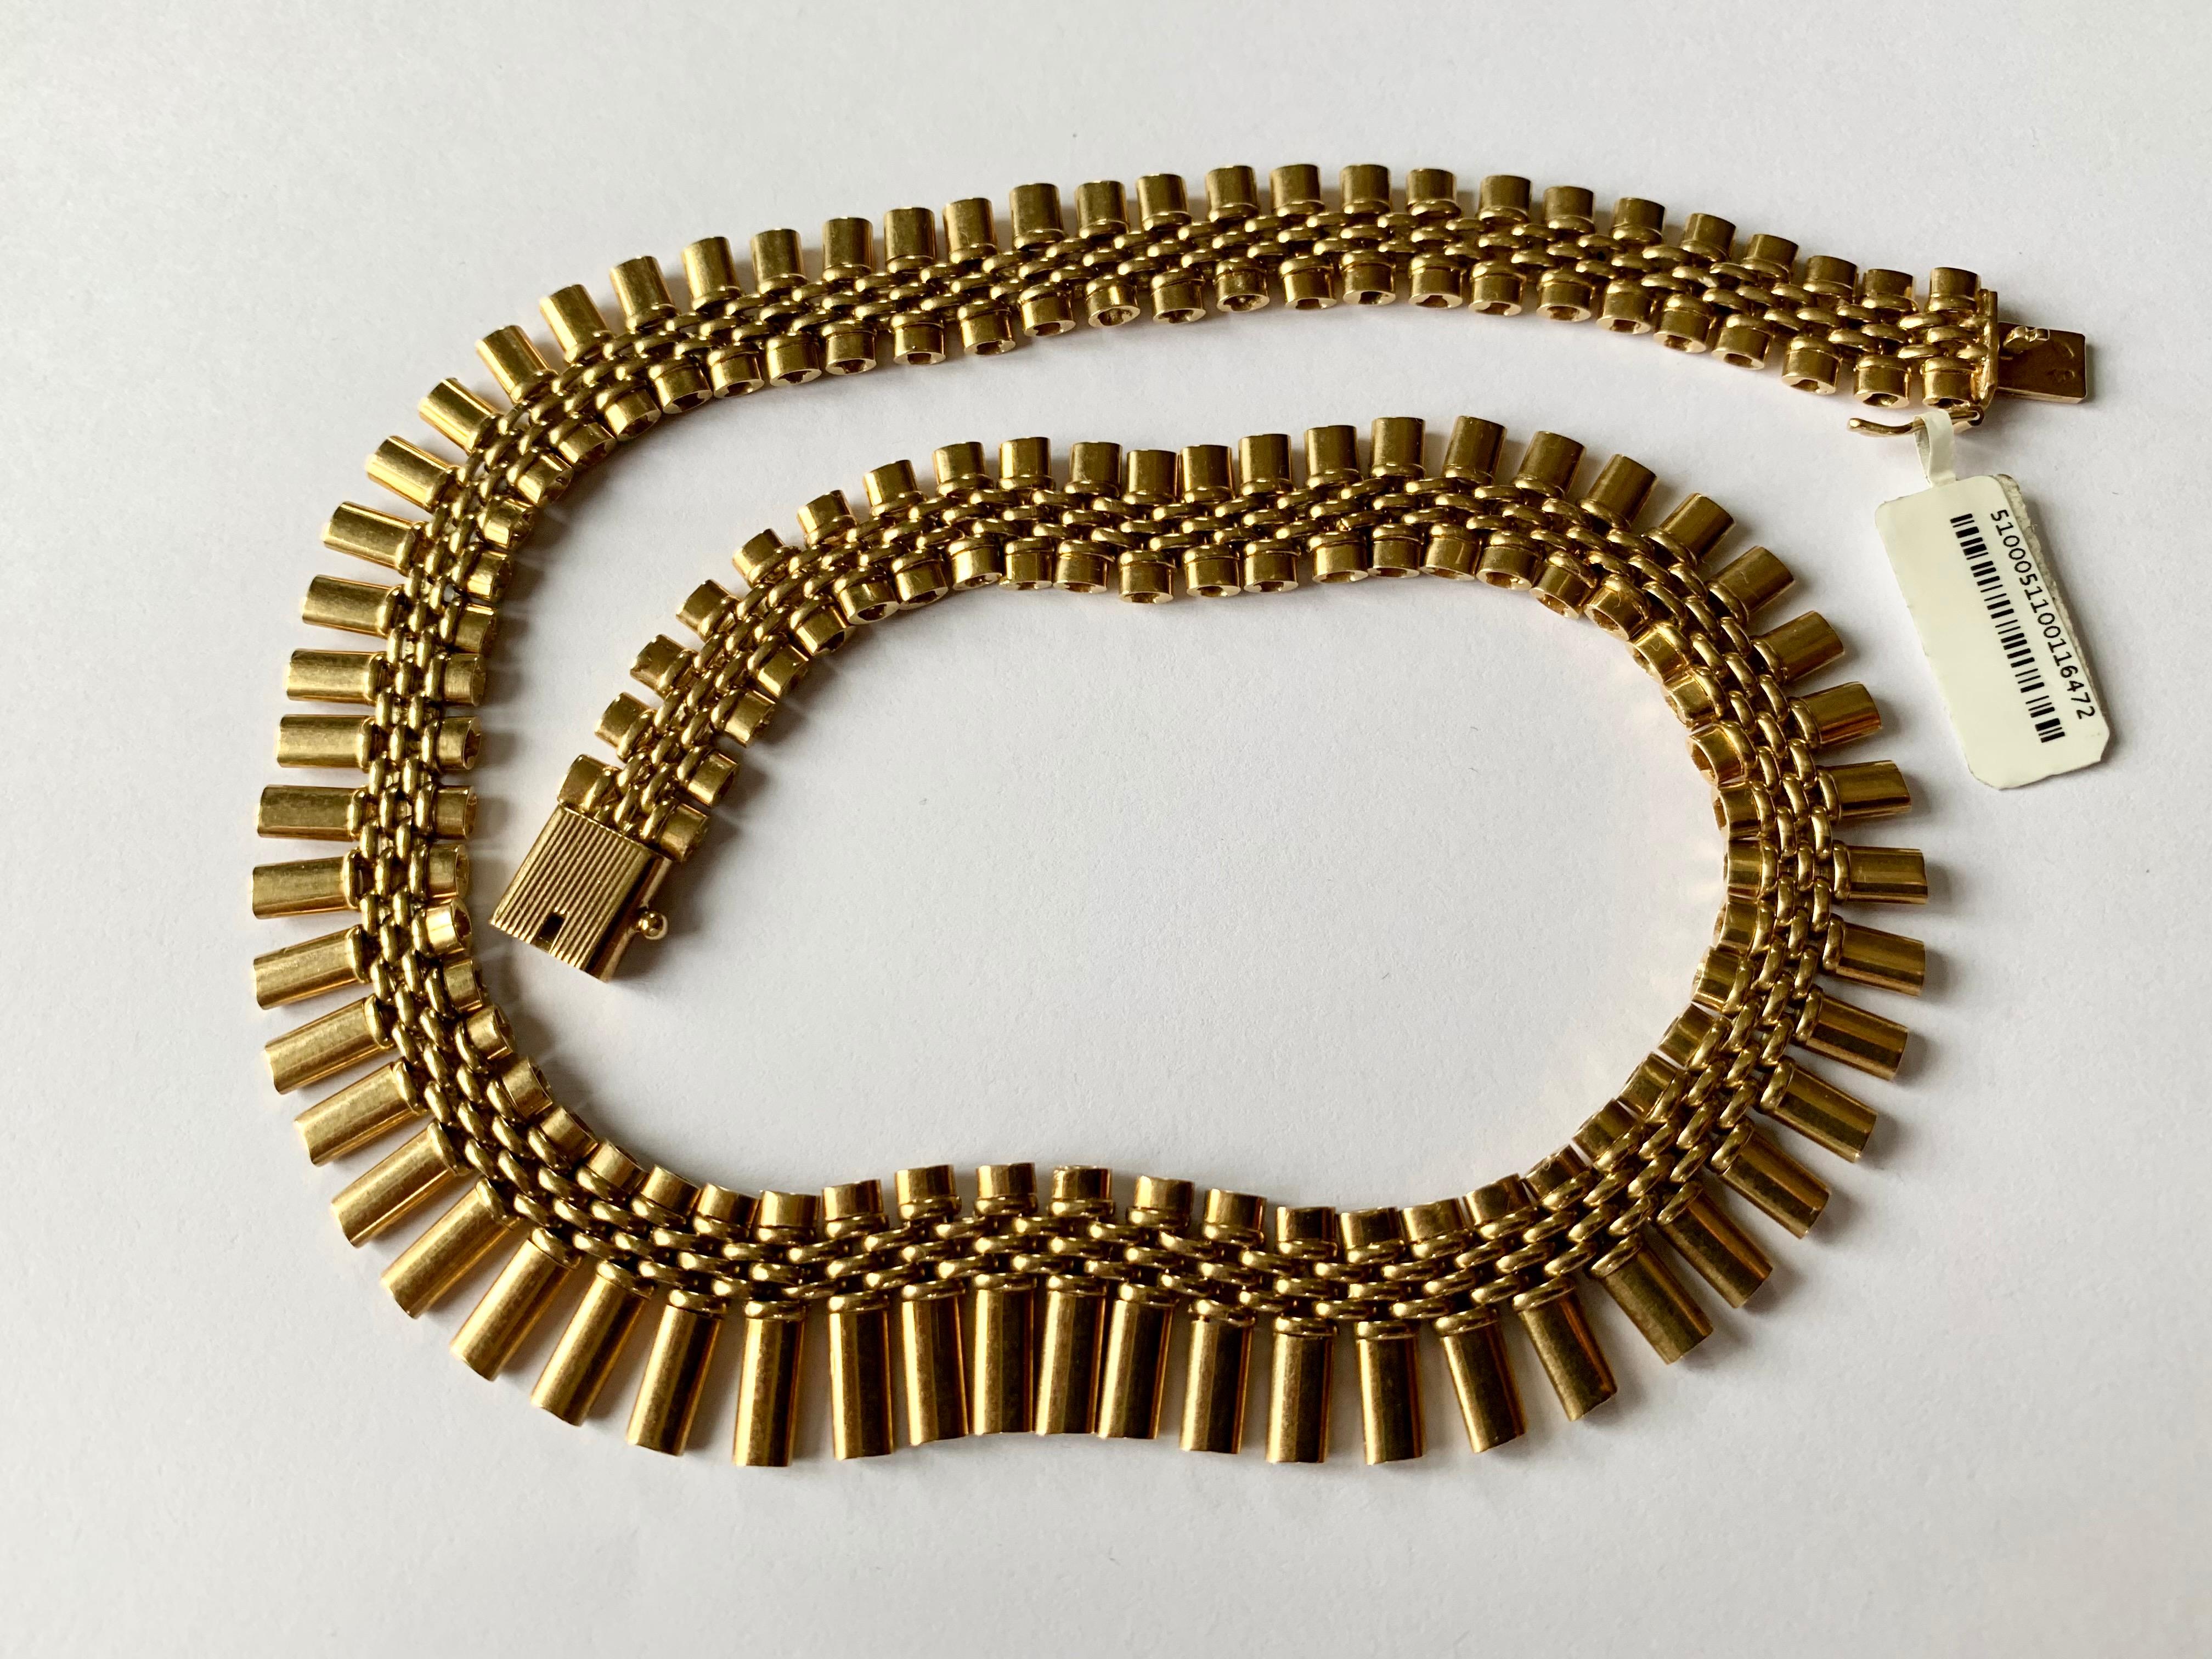 Vintage Gold Fringe Necklace - 10 For Sale on 1stDibs